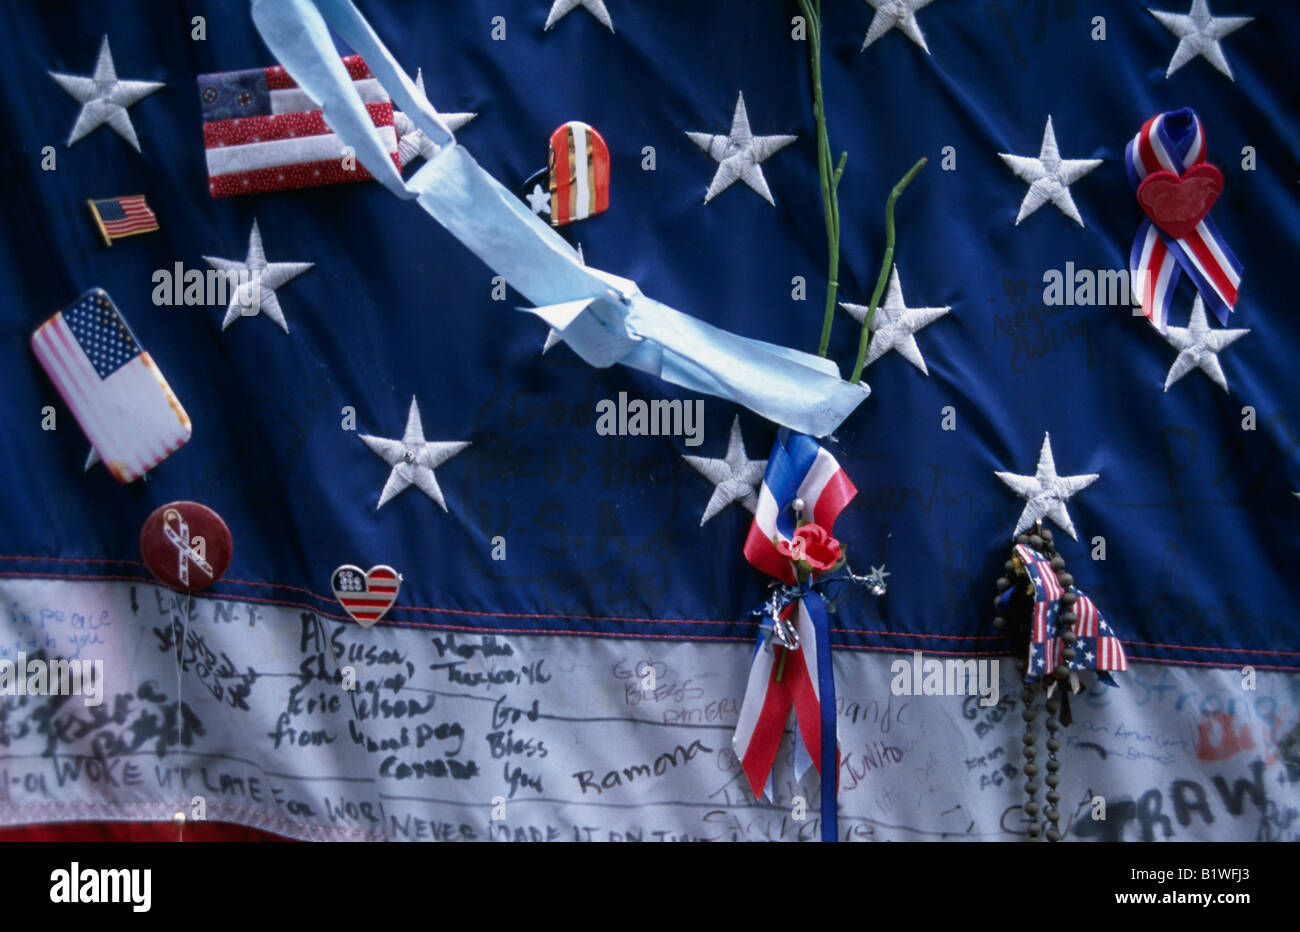 USA Amérique du Nord New York City Close up detail du 11 septembre avec memorial décorées stars and stripes flag Banque D'Images